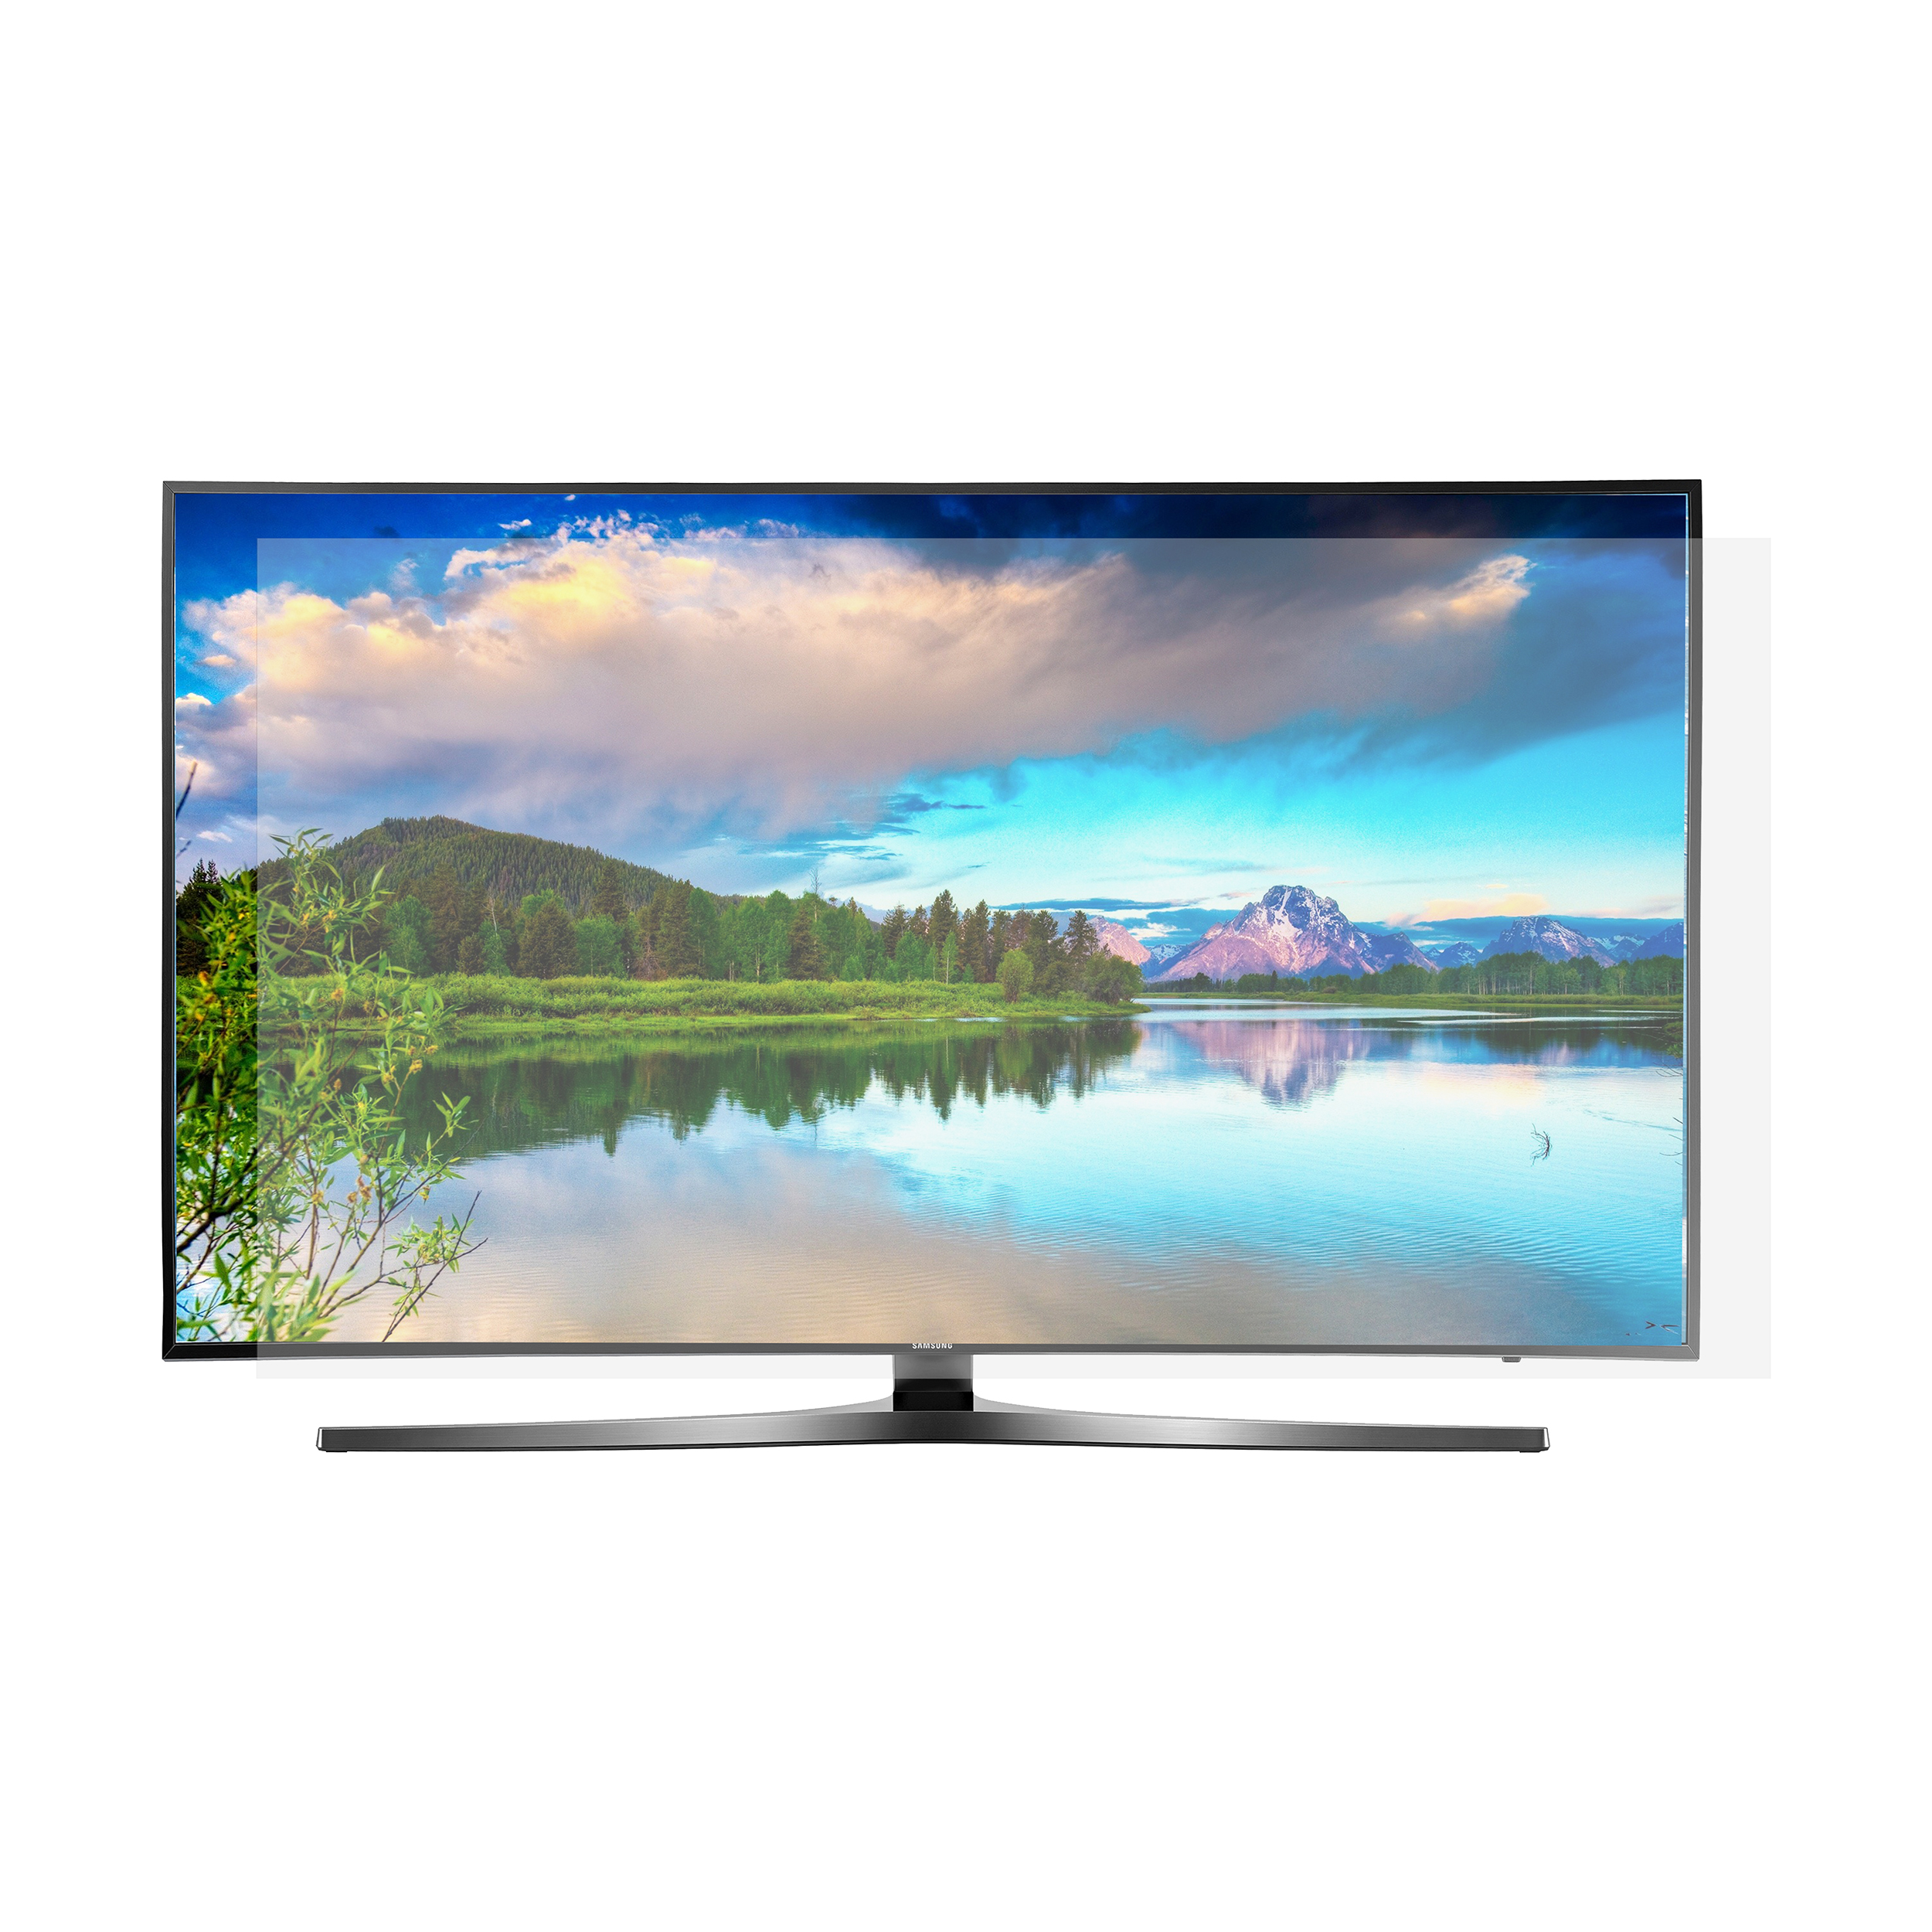 محافظ صفحه نمایش تلویزیون مدل 50-B مناسب برای تلویزیون های 50 اینچی